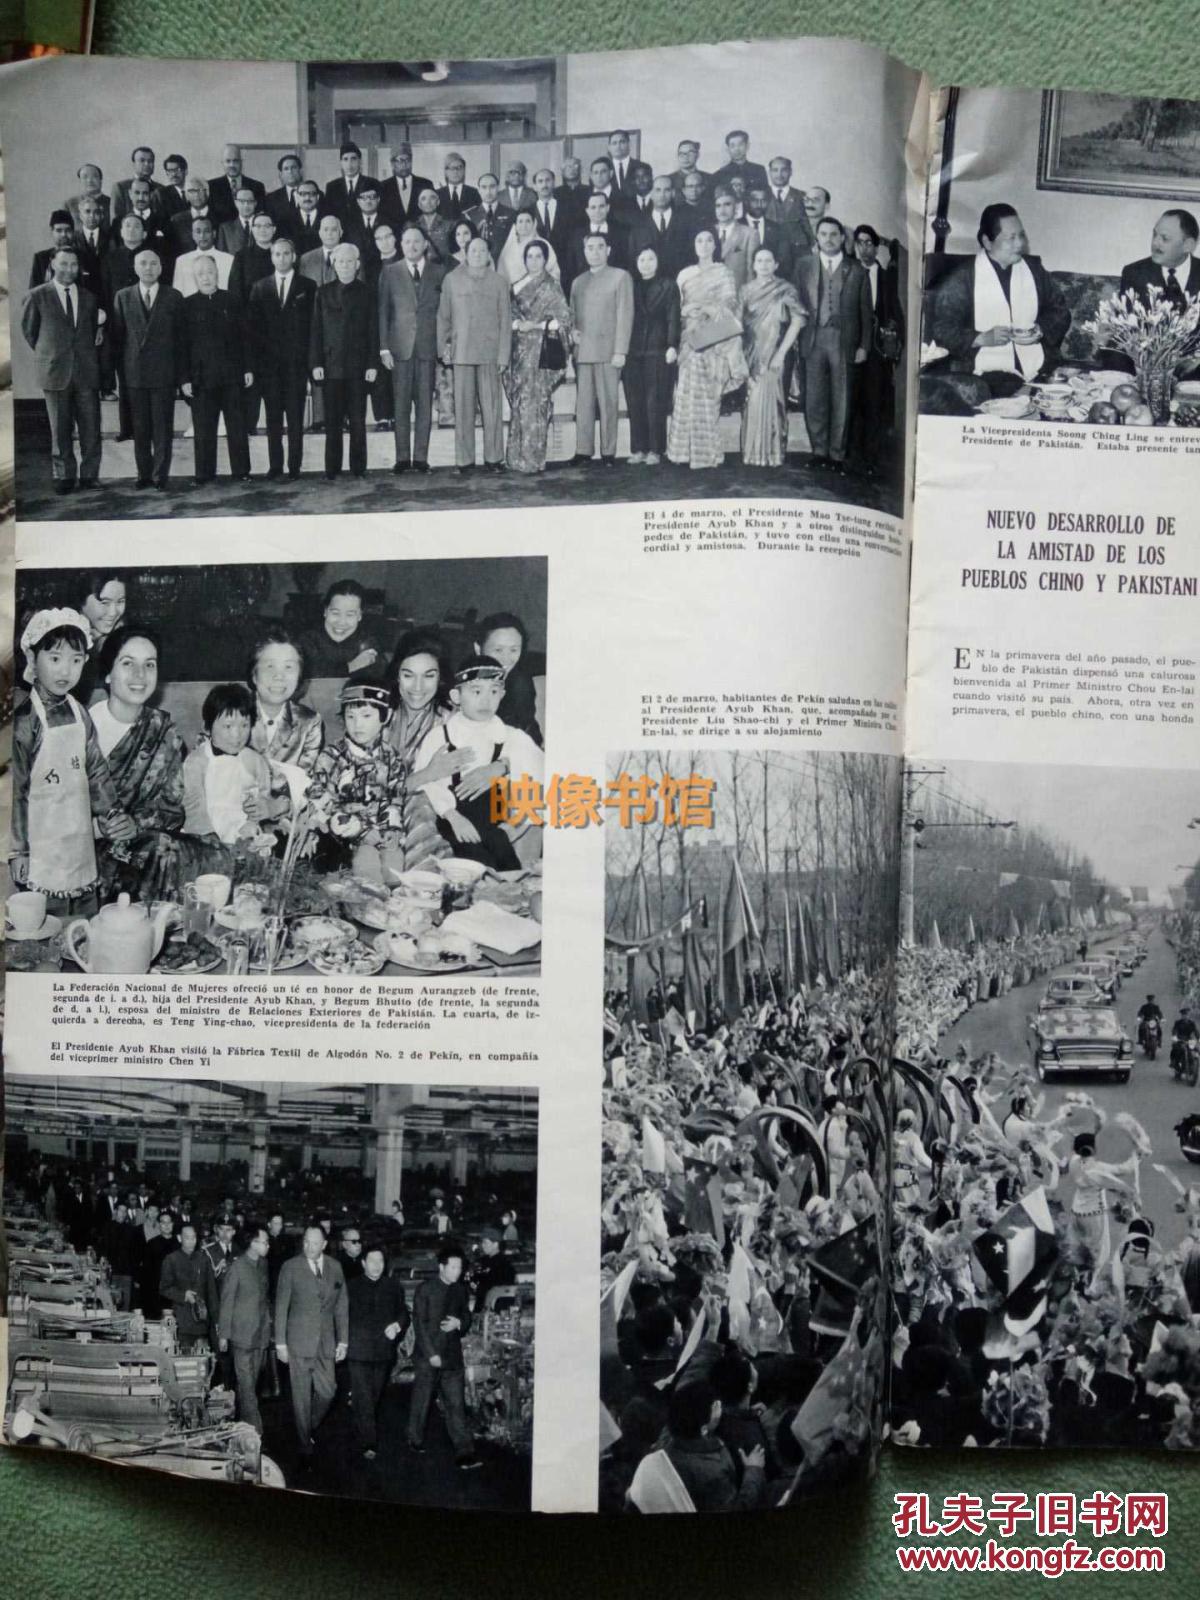 【图】中国画报西班牙语版,1965年5月,珍贵历